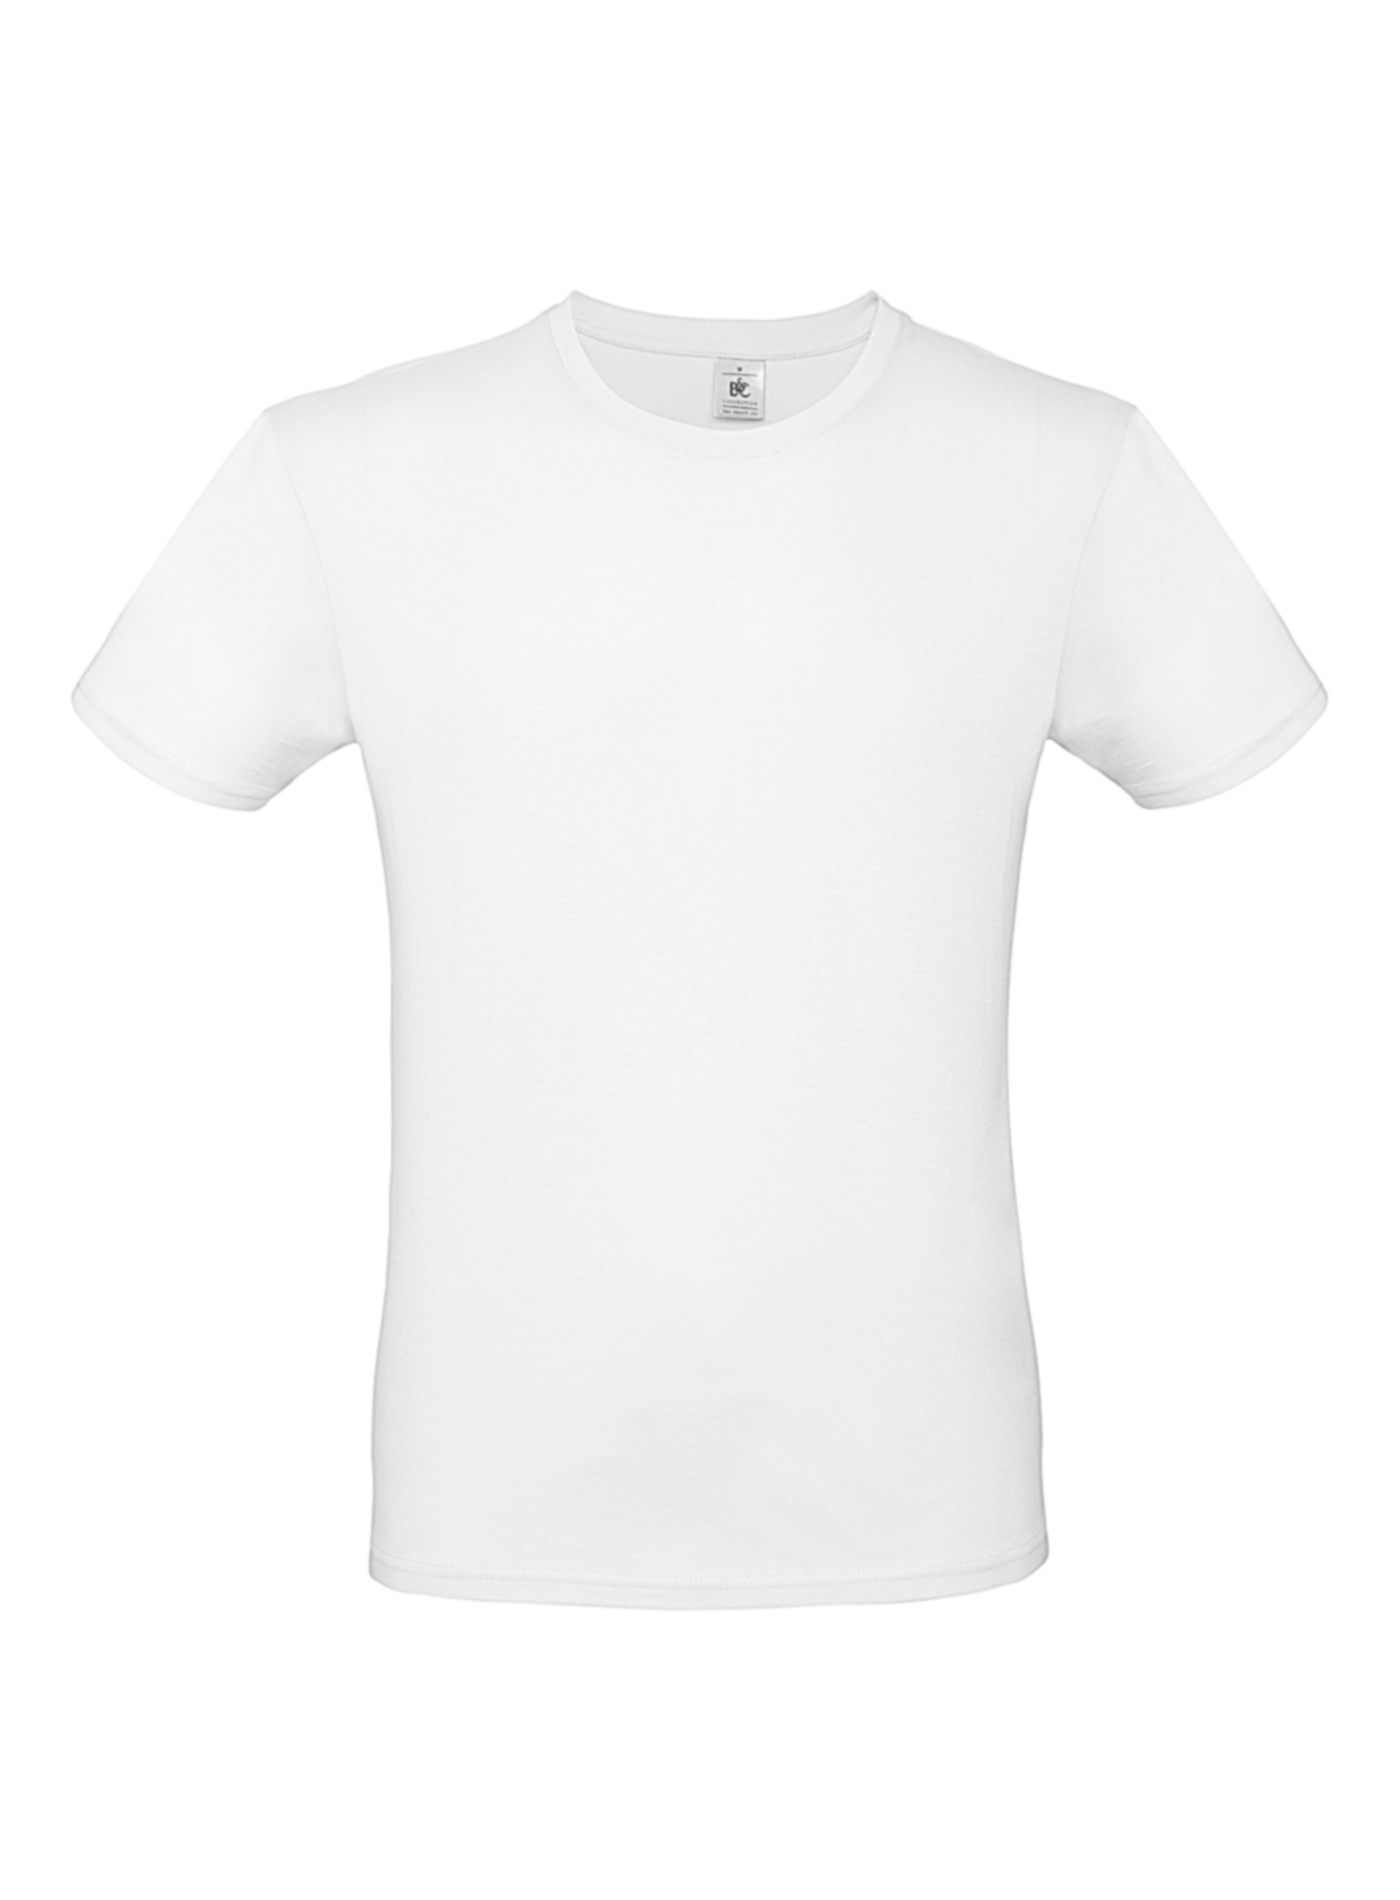 Pánské tričko B&C - Bílá L